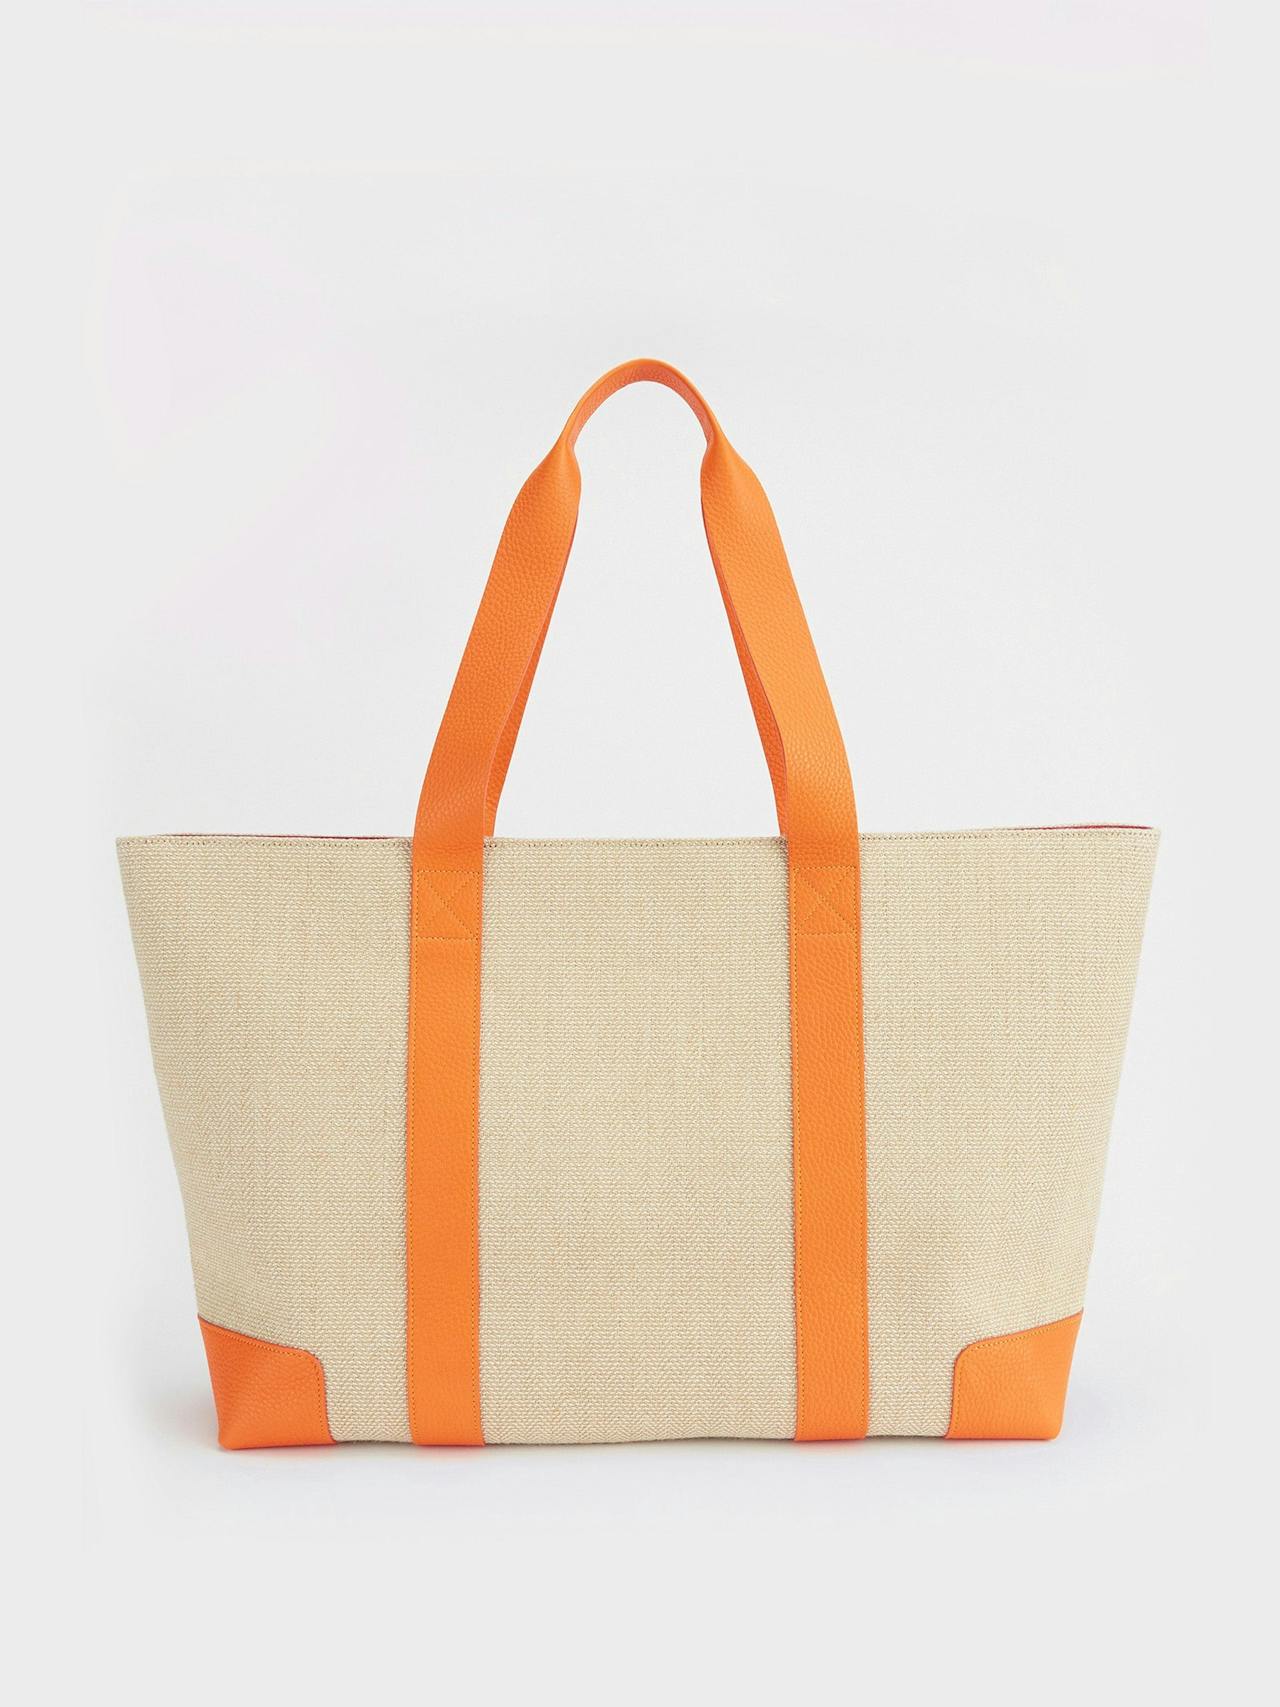 The Luxe beach bag in citrus orange